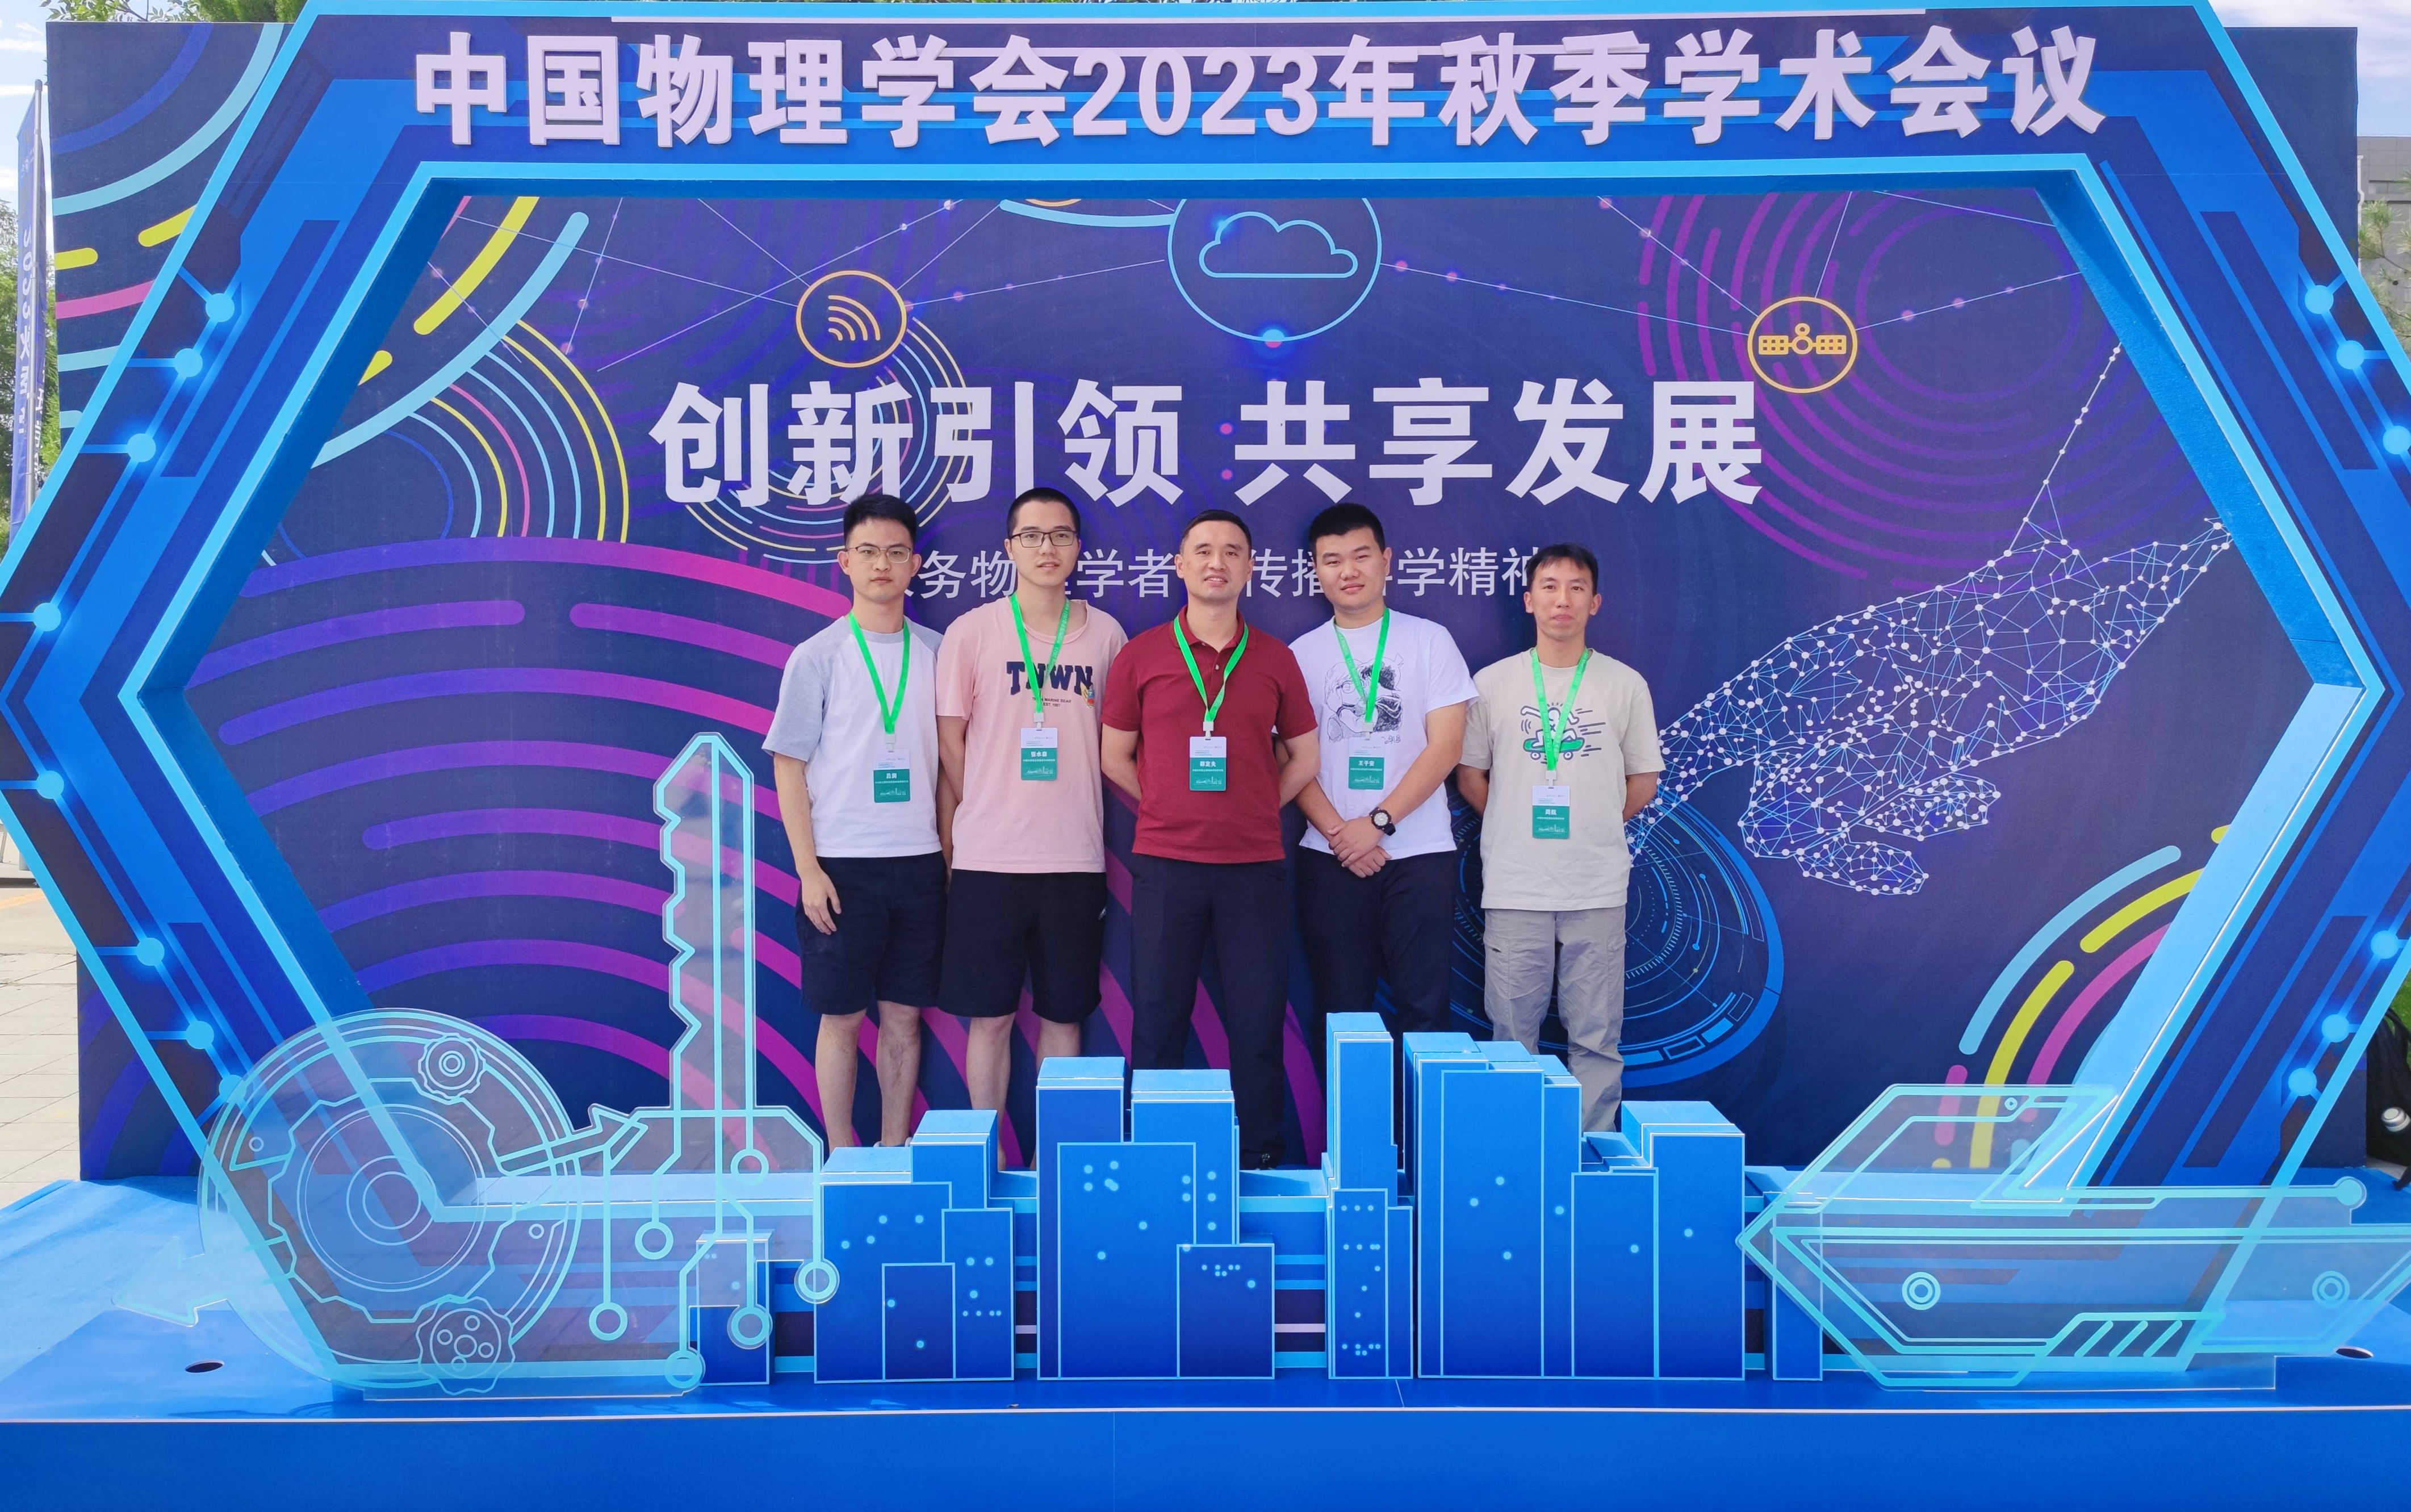 We attended CPS2023 Fall meeting. From Left：Run Lyu,Shui-Sen Zhang, Ding-Fu Shao, Zi-An Wang, and Hang Zhou.